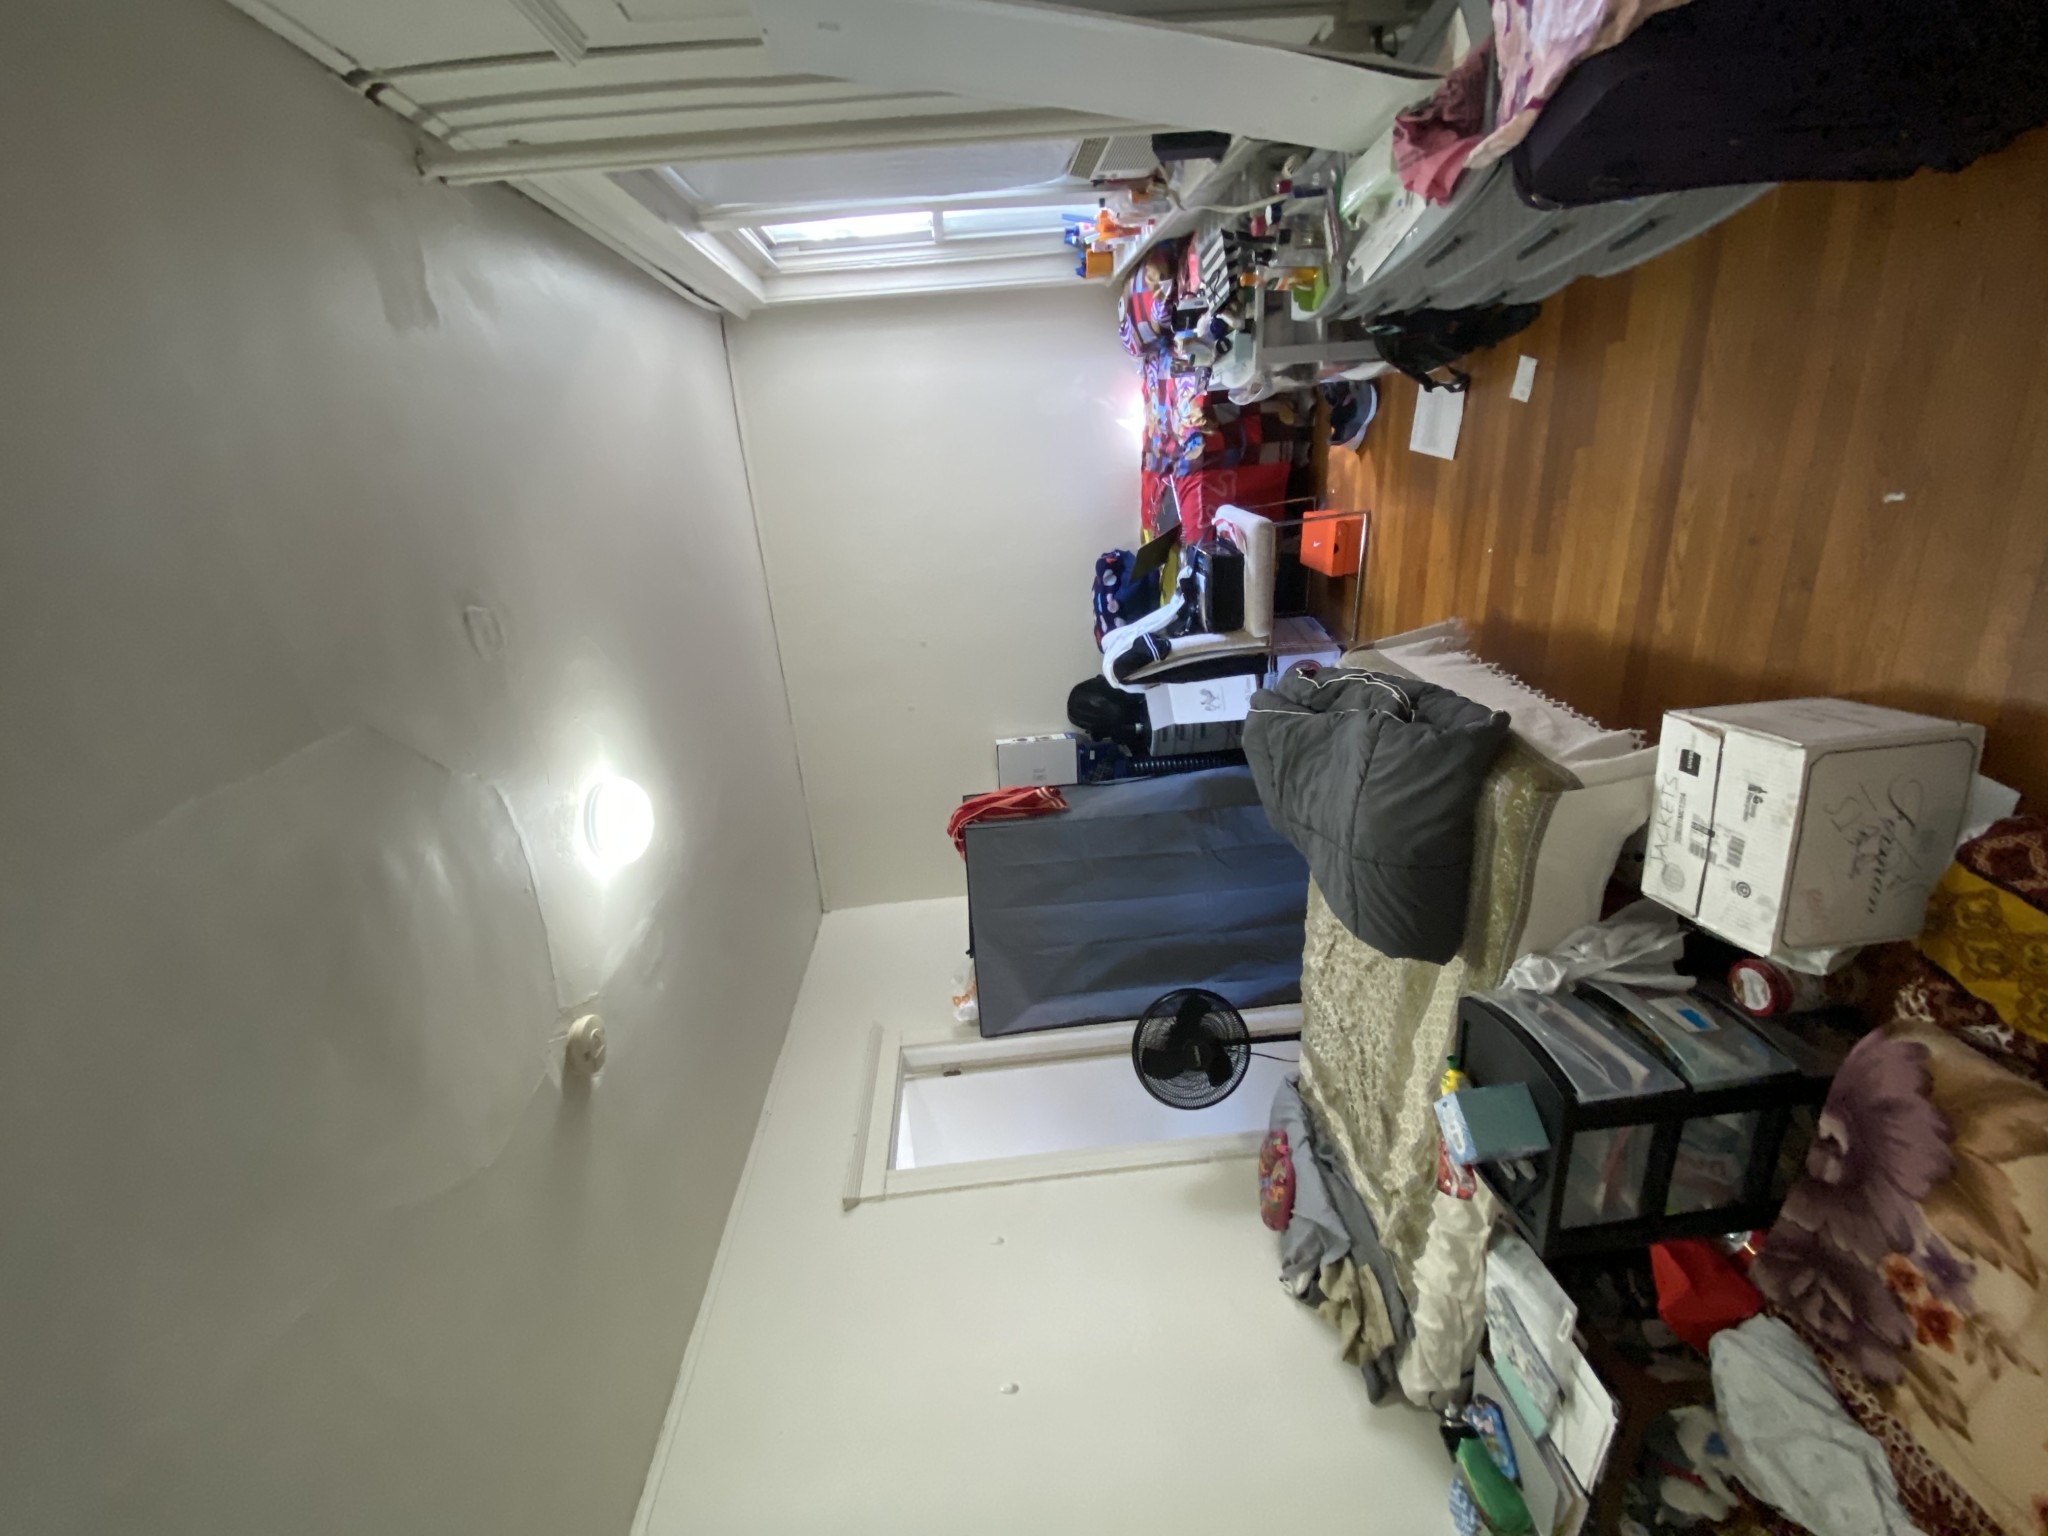 Photos of apartment on Riverway,Boston MA 02215